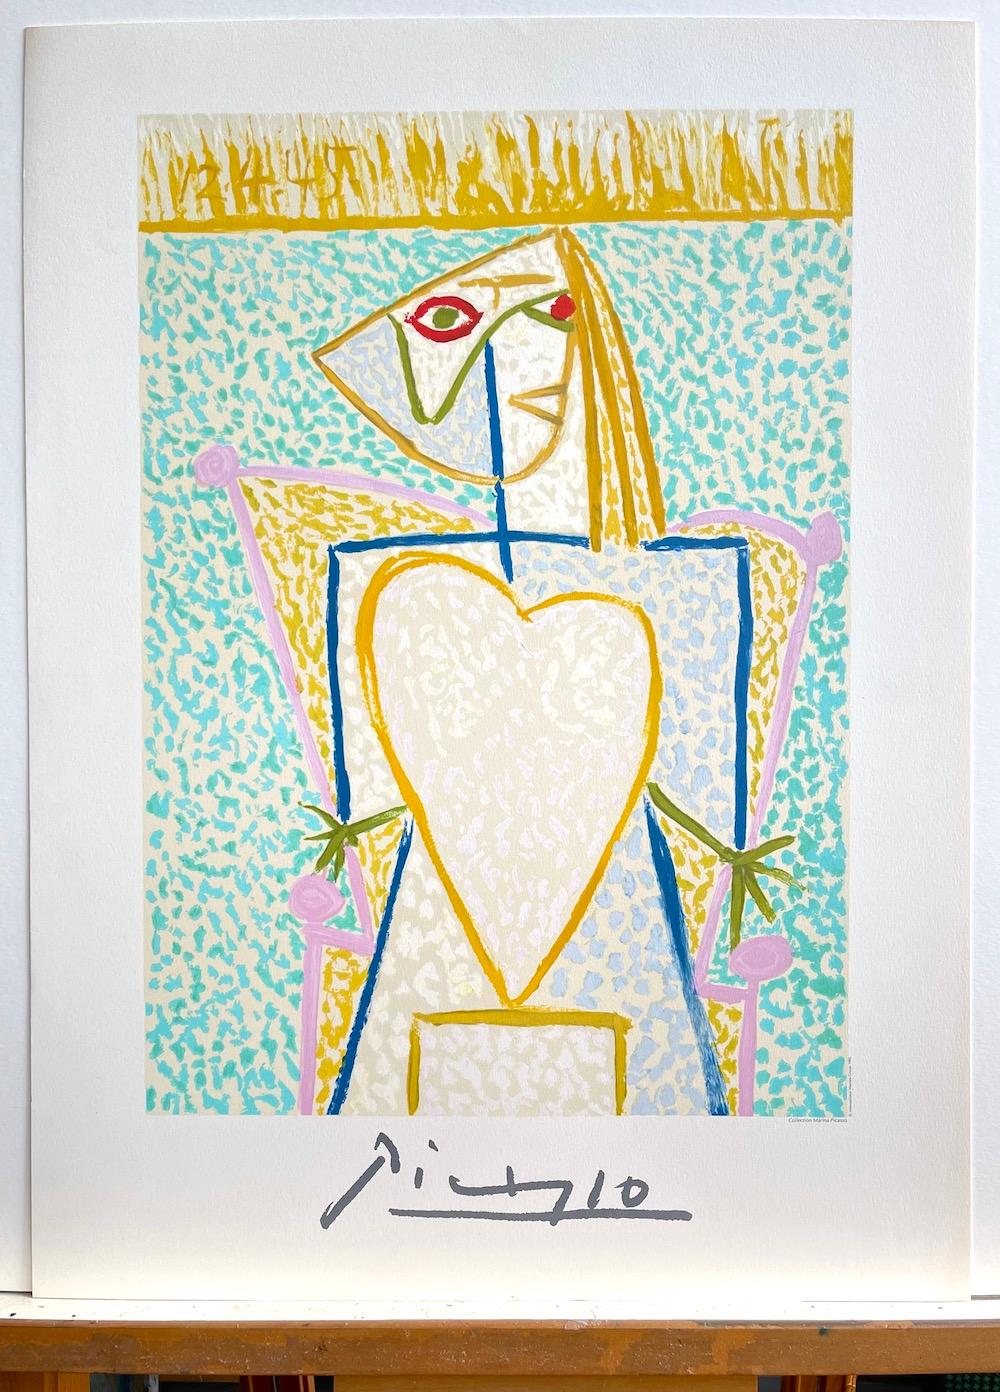 Künstler: Pablo Picasso, Nach, Spanier (1881 - 1973)
Titel: FEMME AU BUSTE EN COEUR #1-A
Jahr des ursprünglichen Kunstwerks: 1945
Medium: Lithographie auf Coventry-Papier, 100% säurefrei
Auflage von 1000, nicht nummeriert, nachlassgeprüfte gedruckte